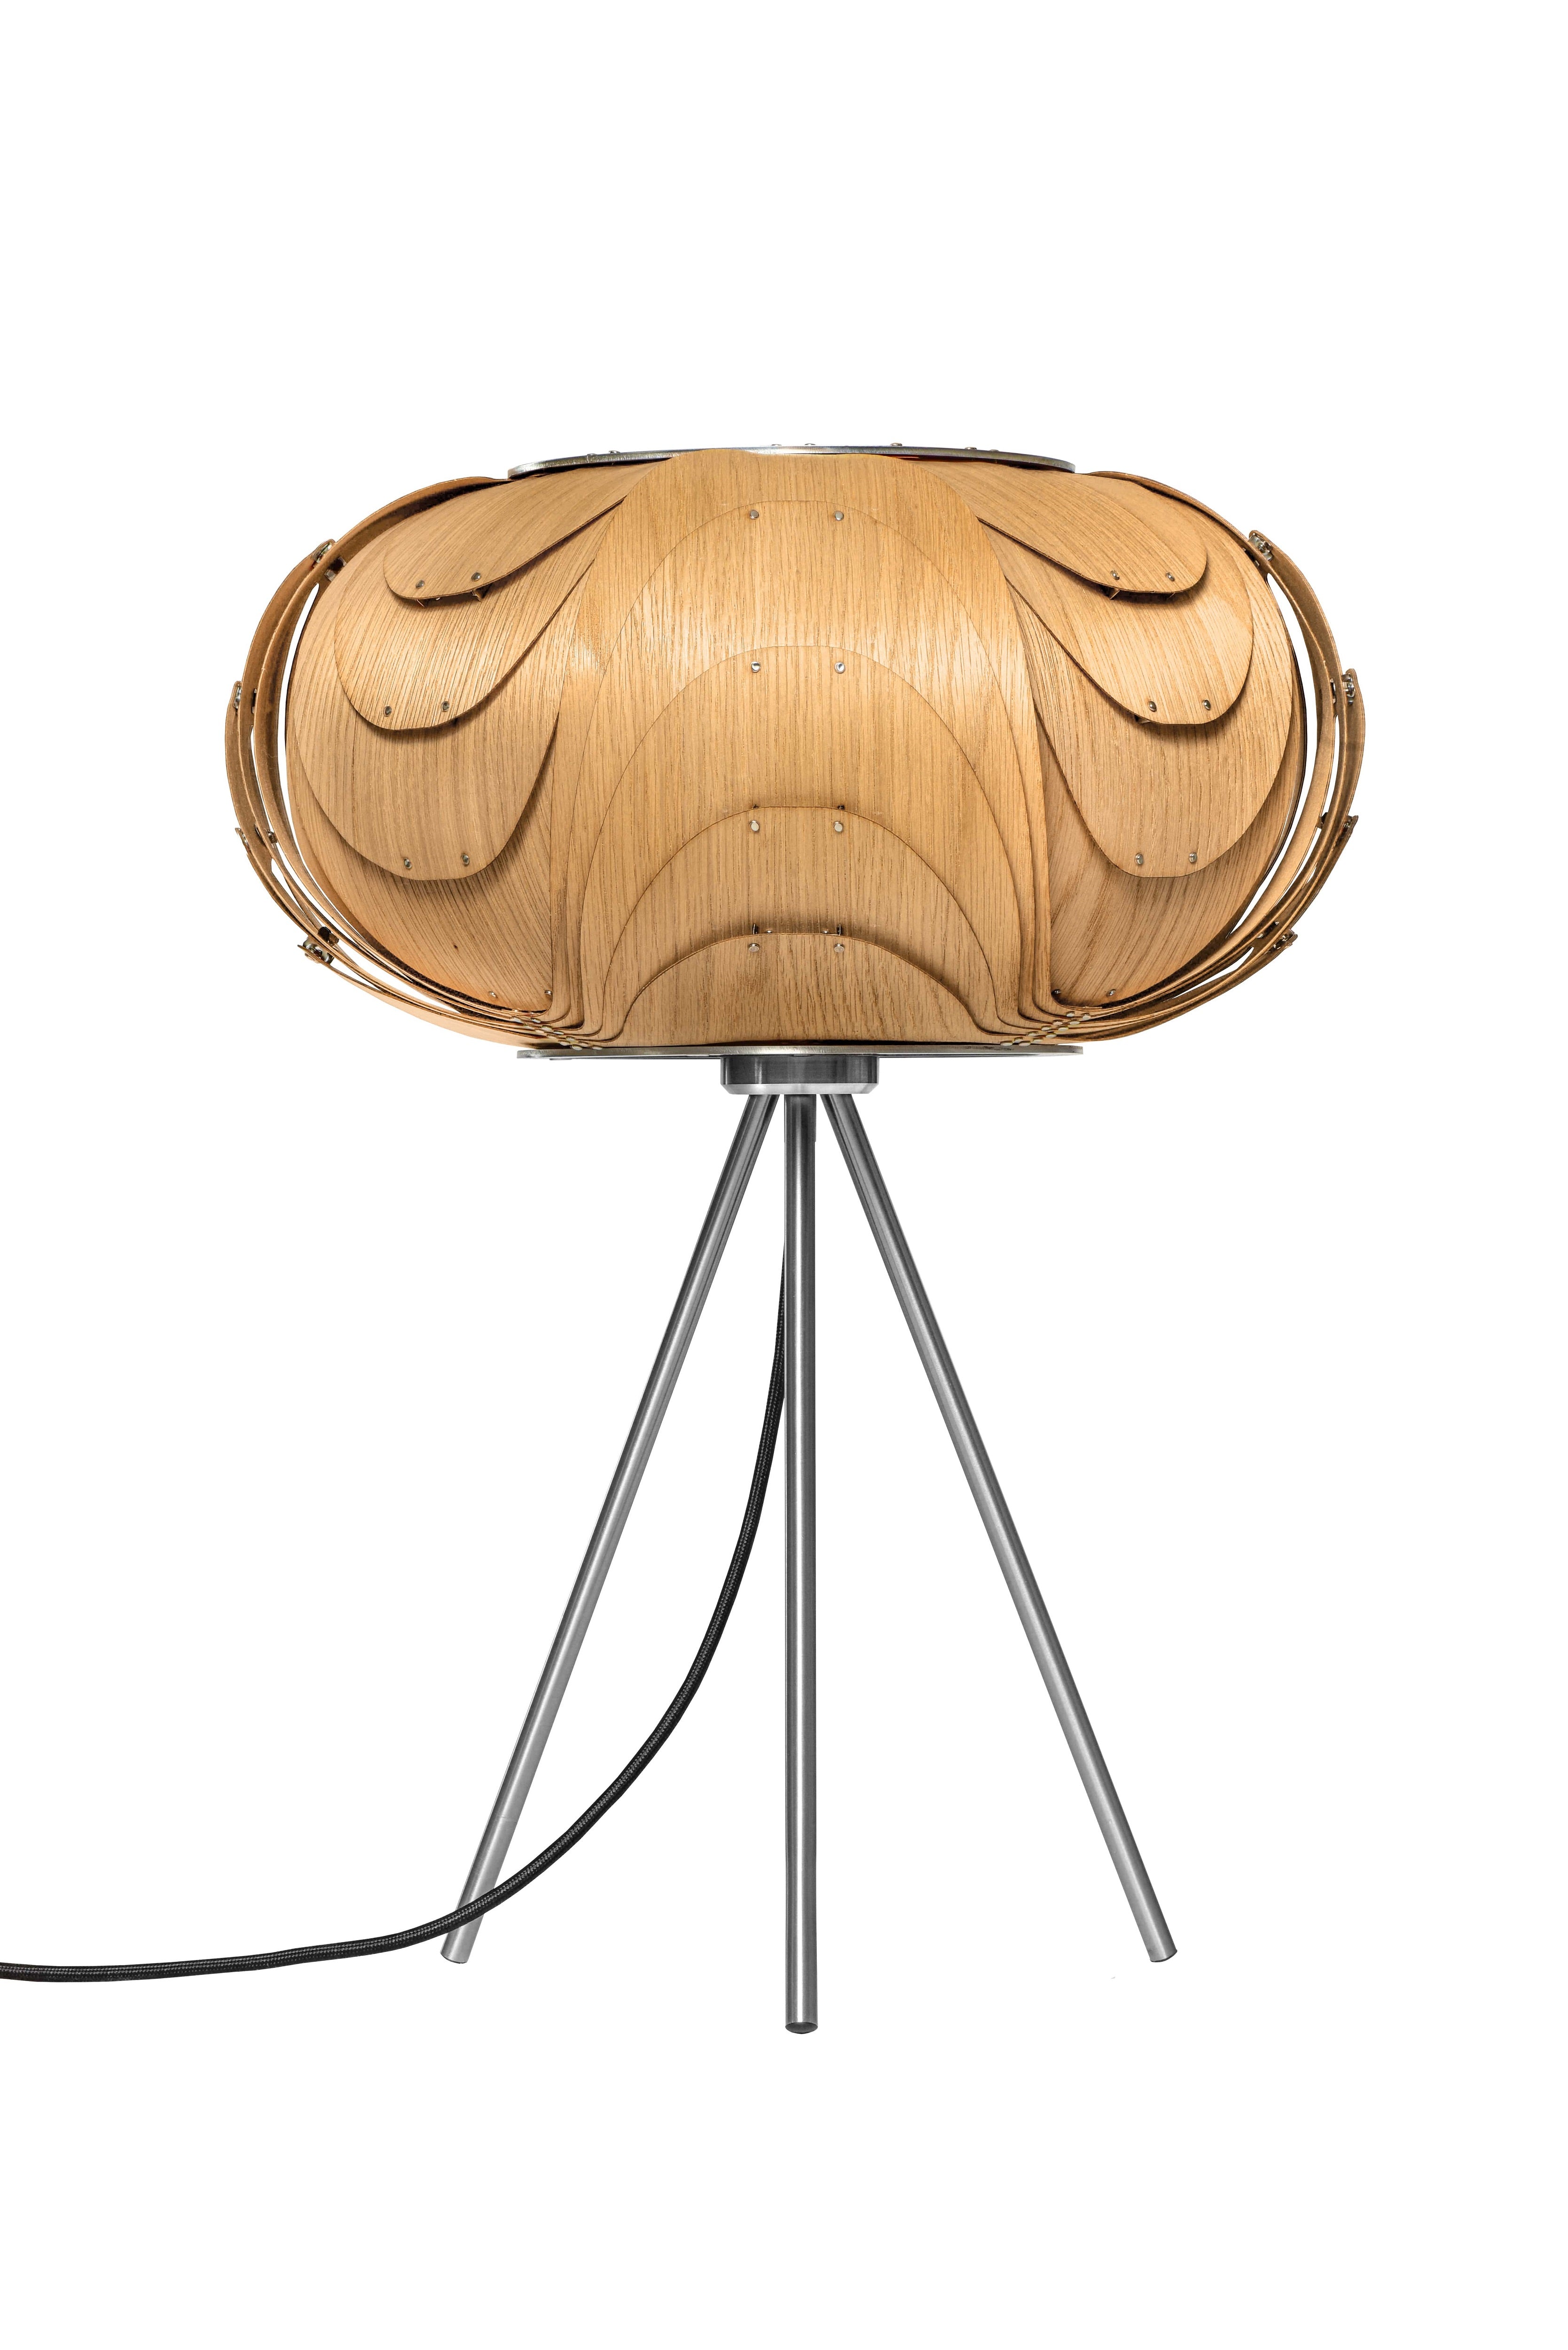 Moderne elegante Holz Tischleuchte in Eiche natur mit Dreibein aus gebürstetem Edelstahl